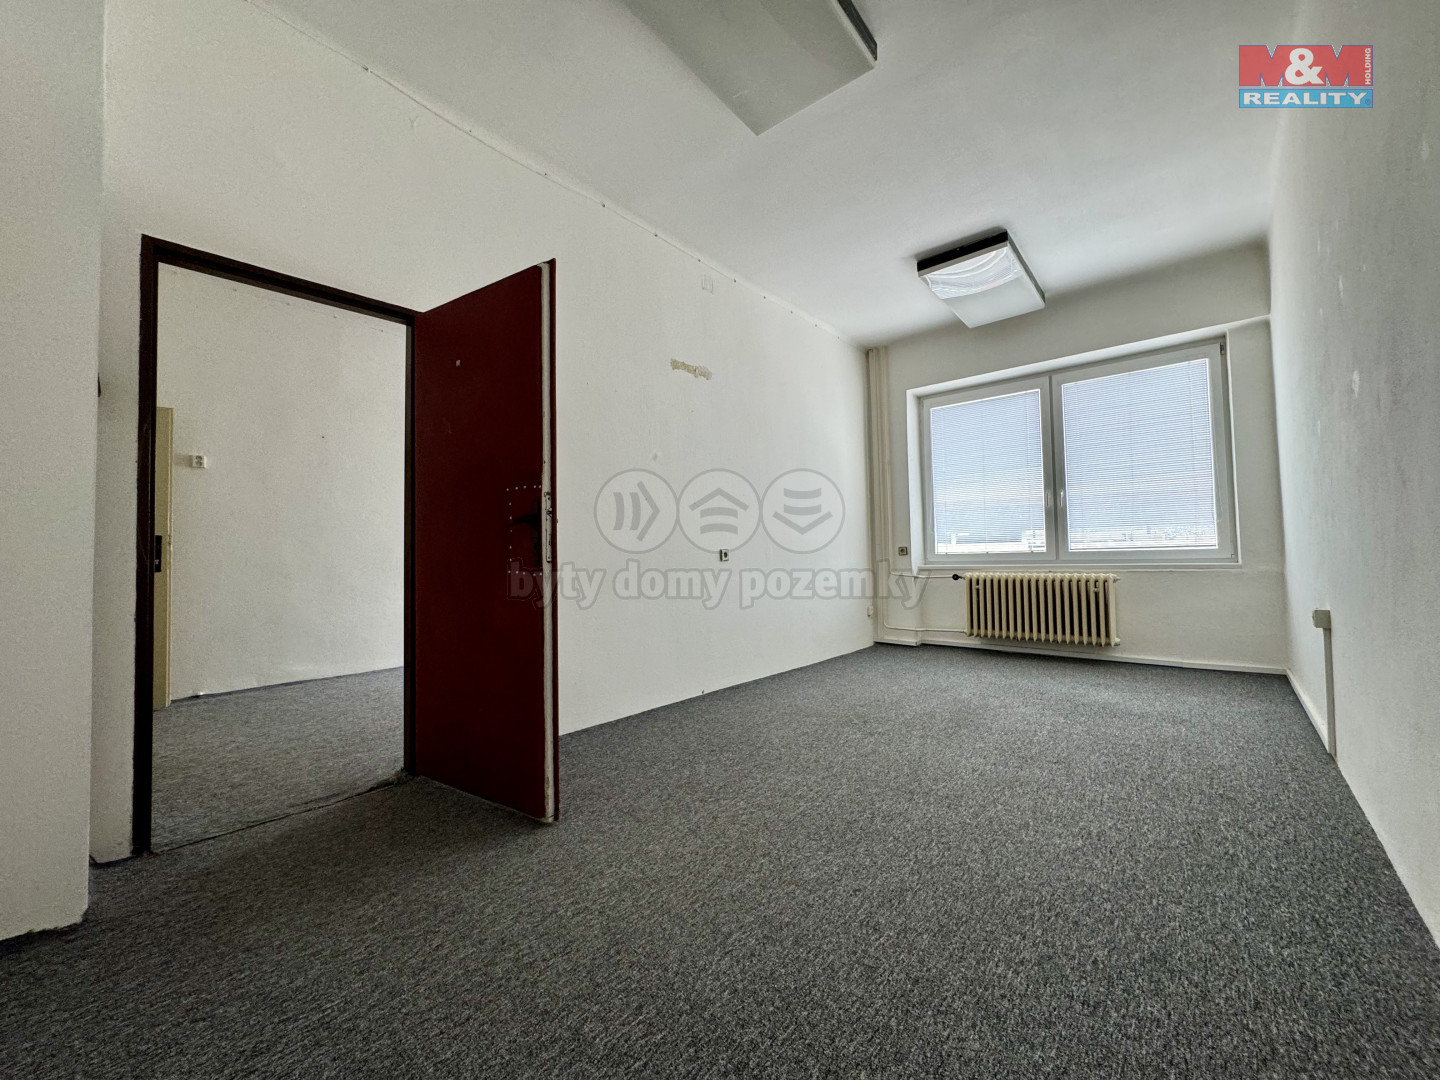 Pronájem kancelářského prostoru, 34 m², Benešov, ul. Žižkova